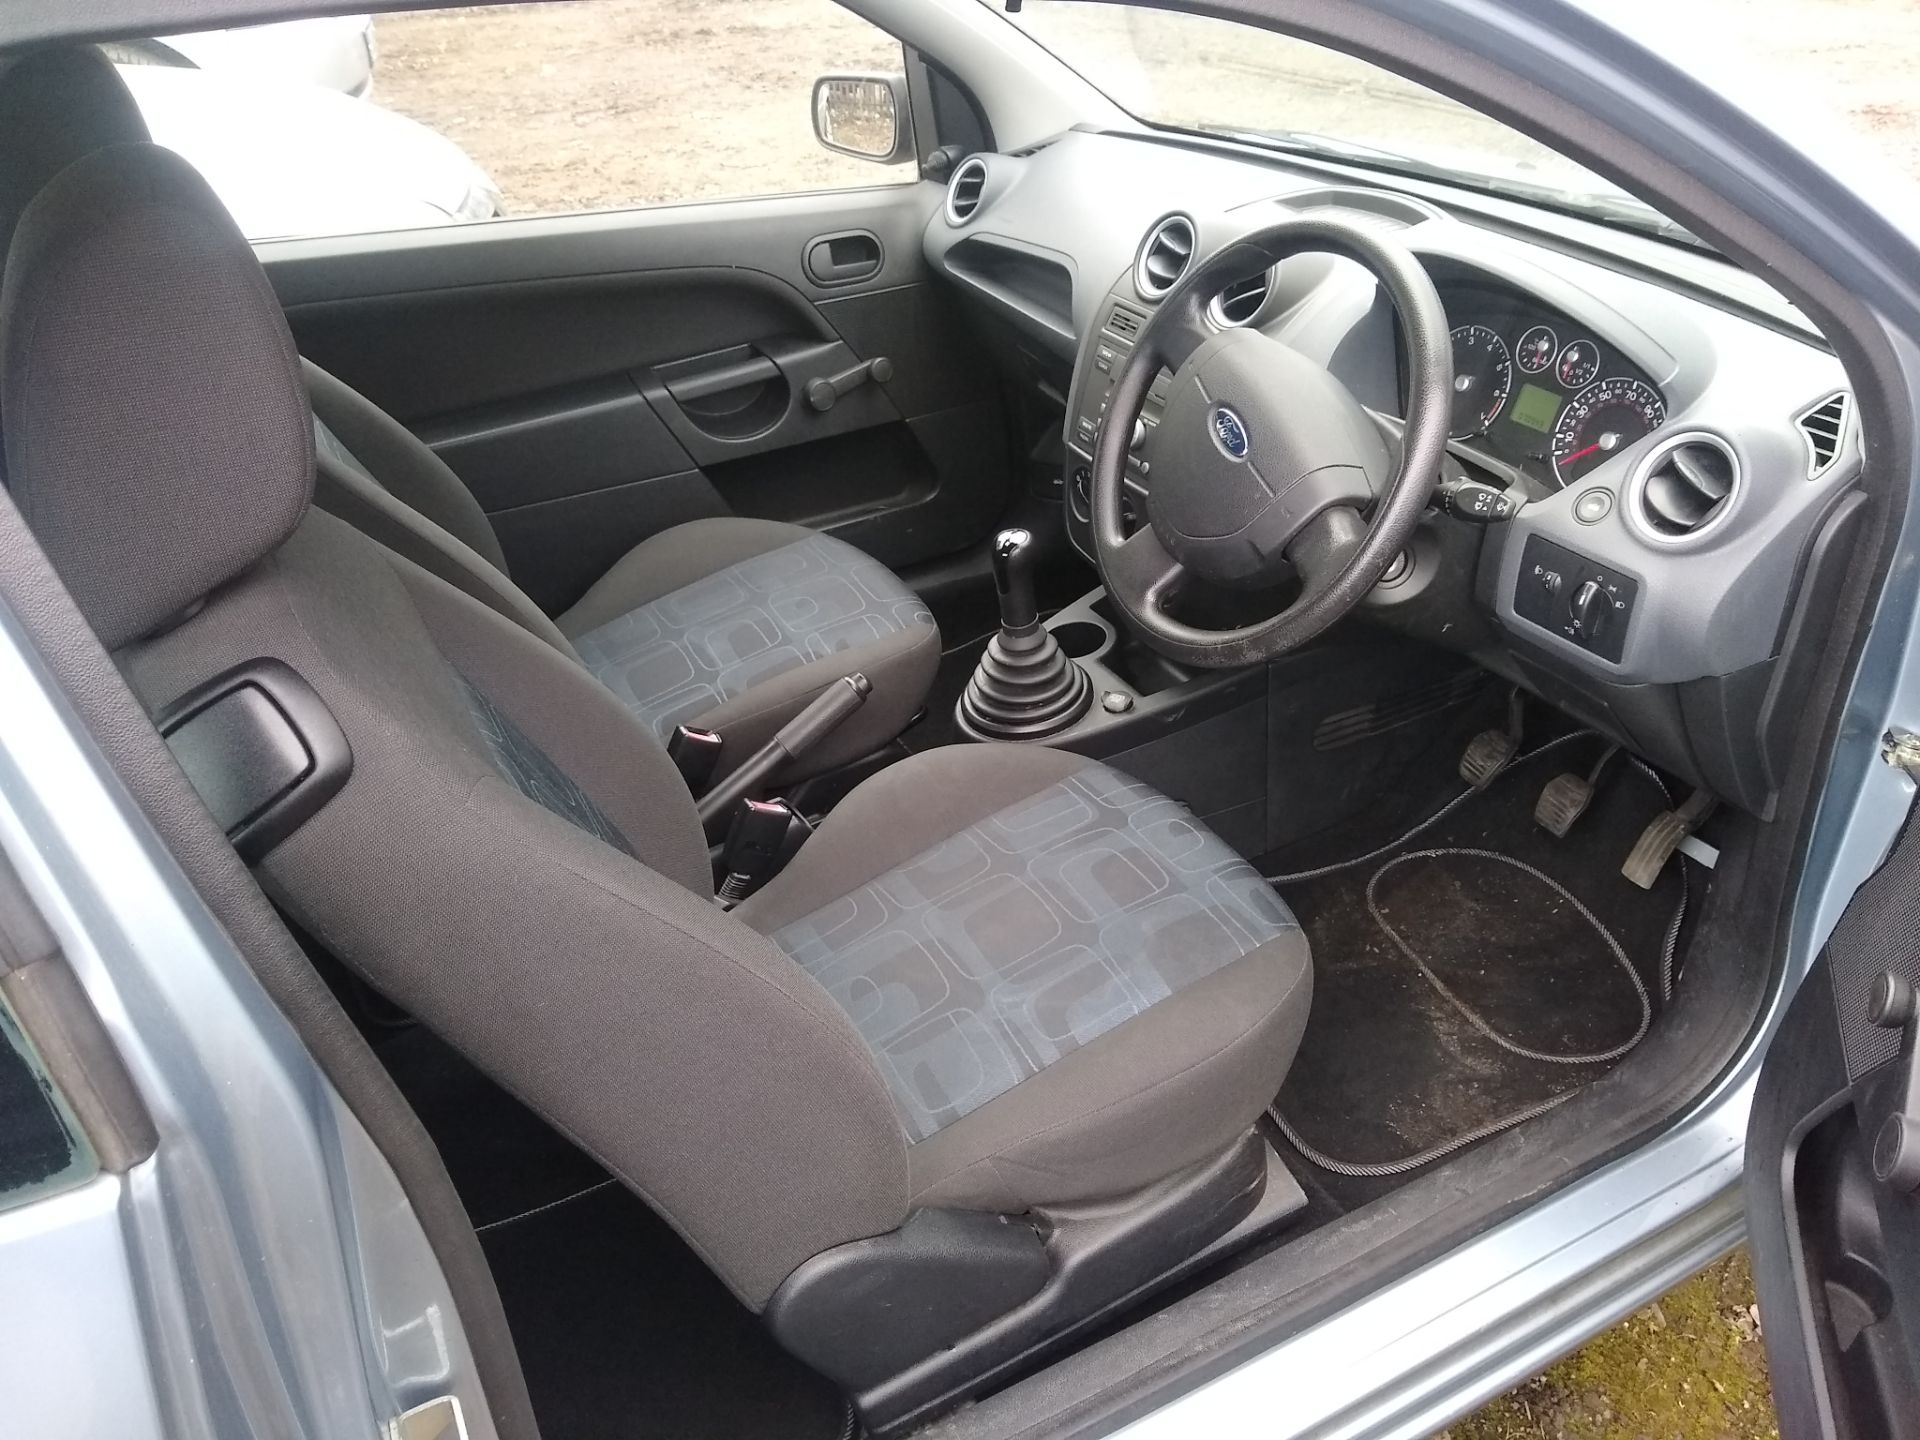 2006 Ford Fiesta 1.25 Studio, 3 door, 2 keys, MOT 20/8/21, 4 recent tyres and service, NL06HGP, - Image 4 of 11